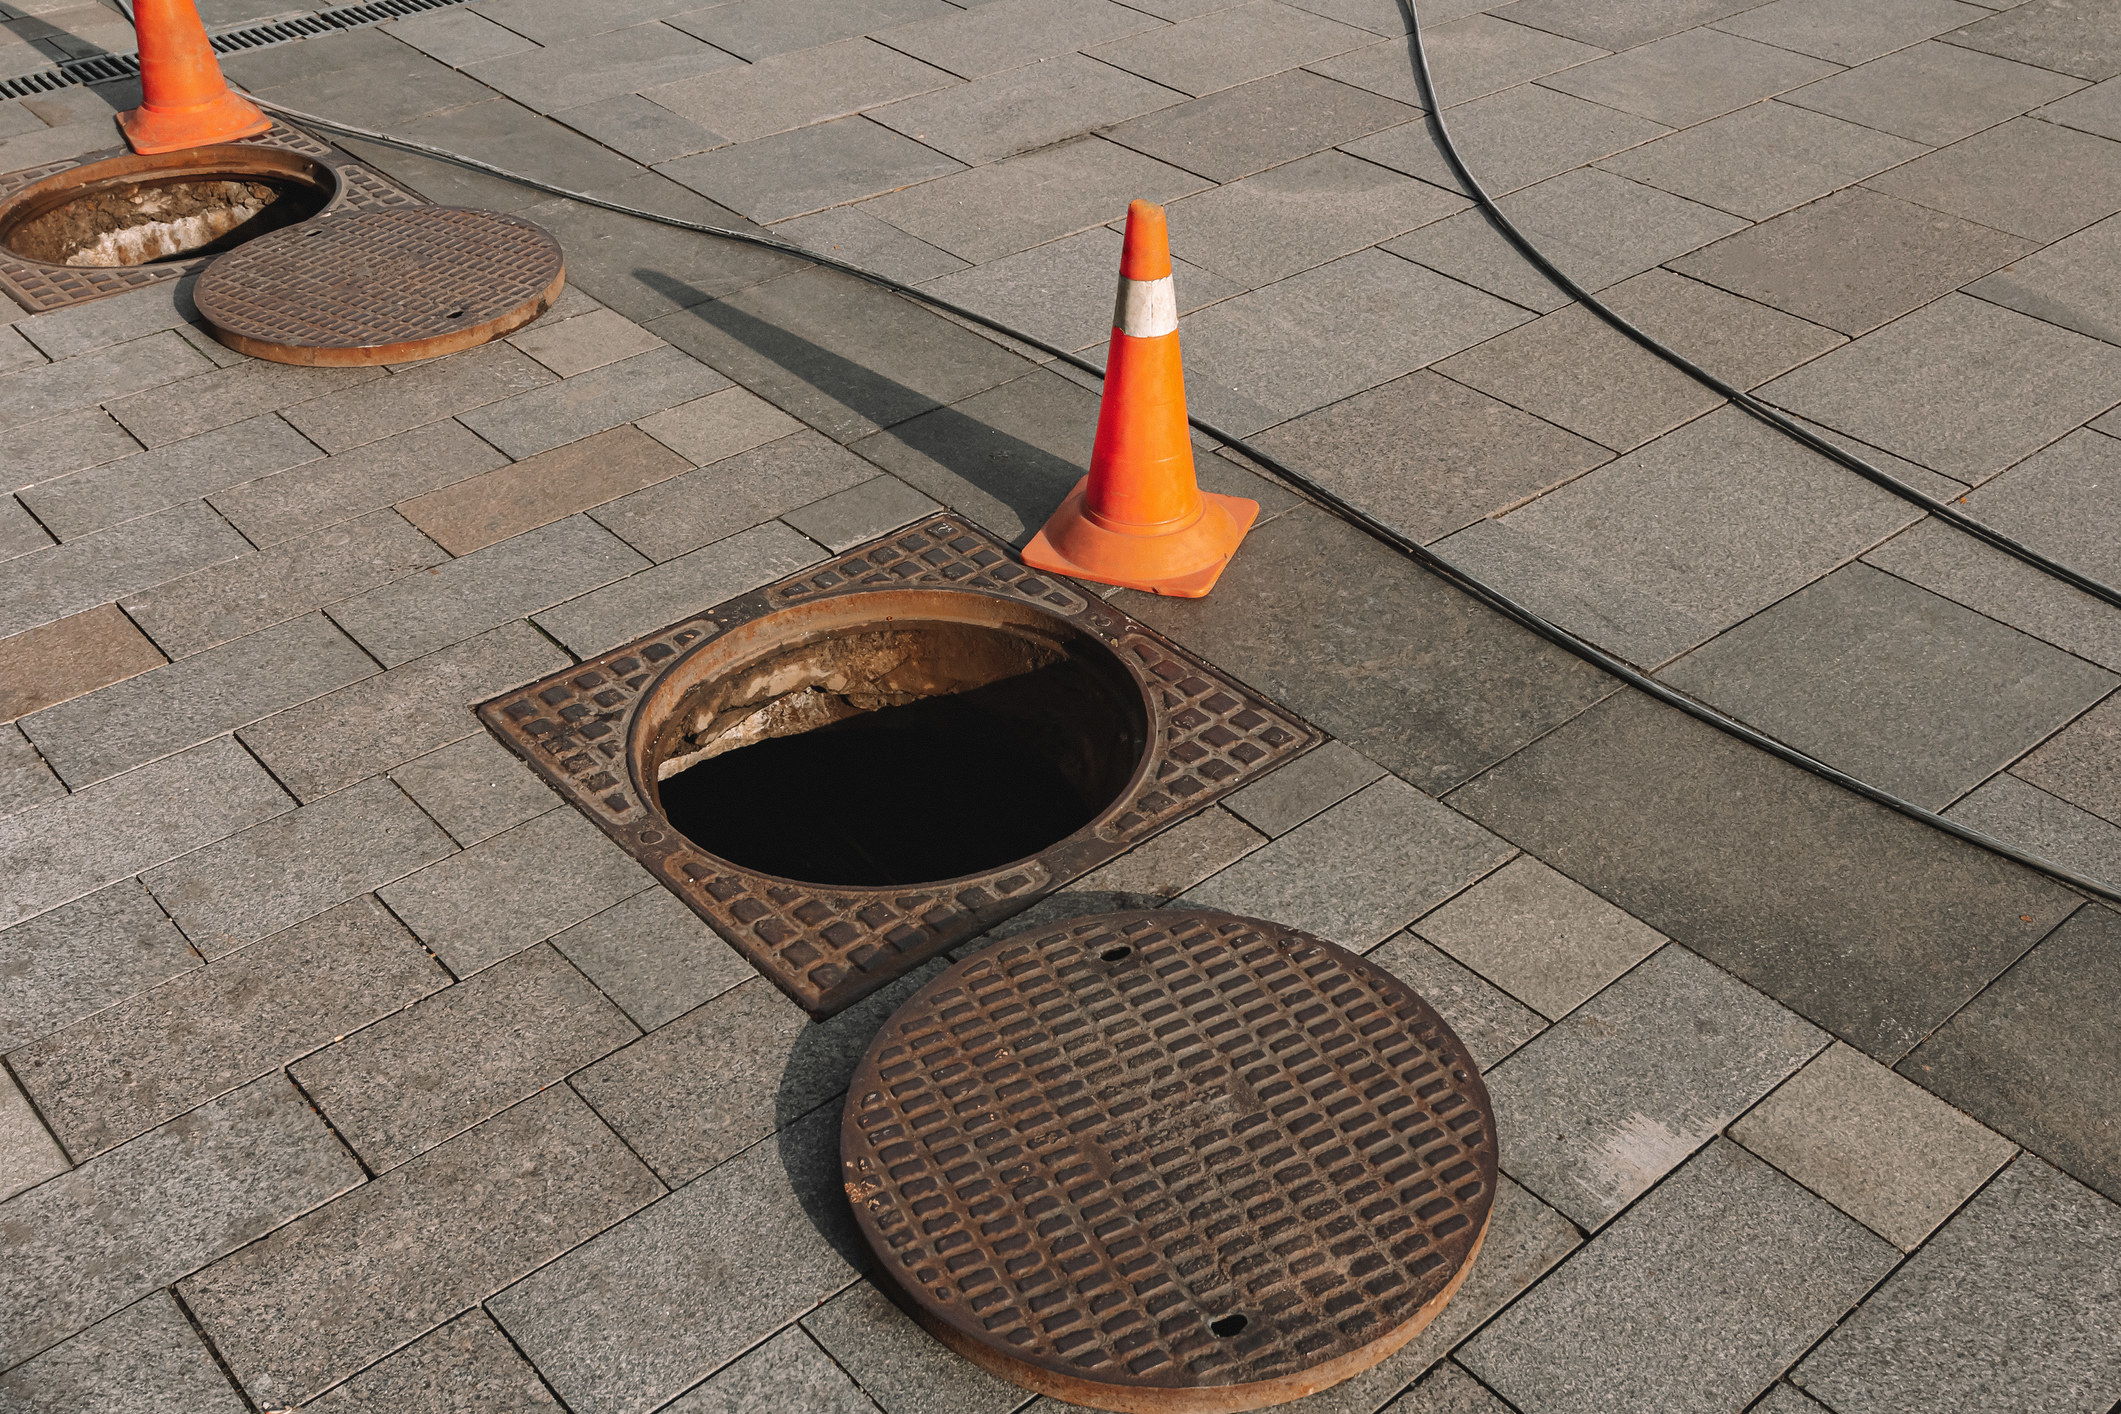 An opened manhole